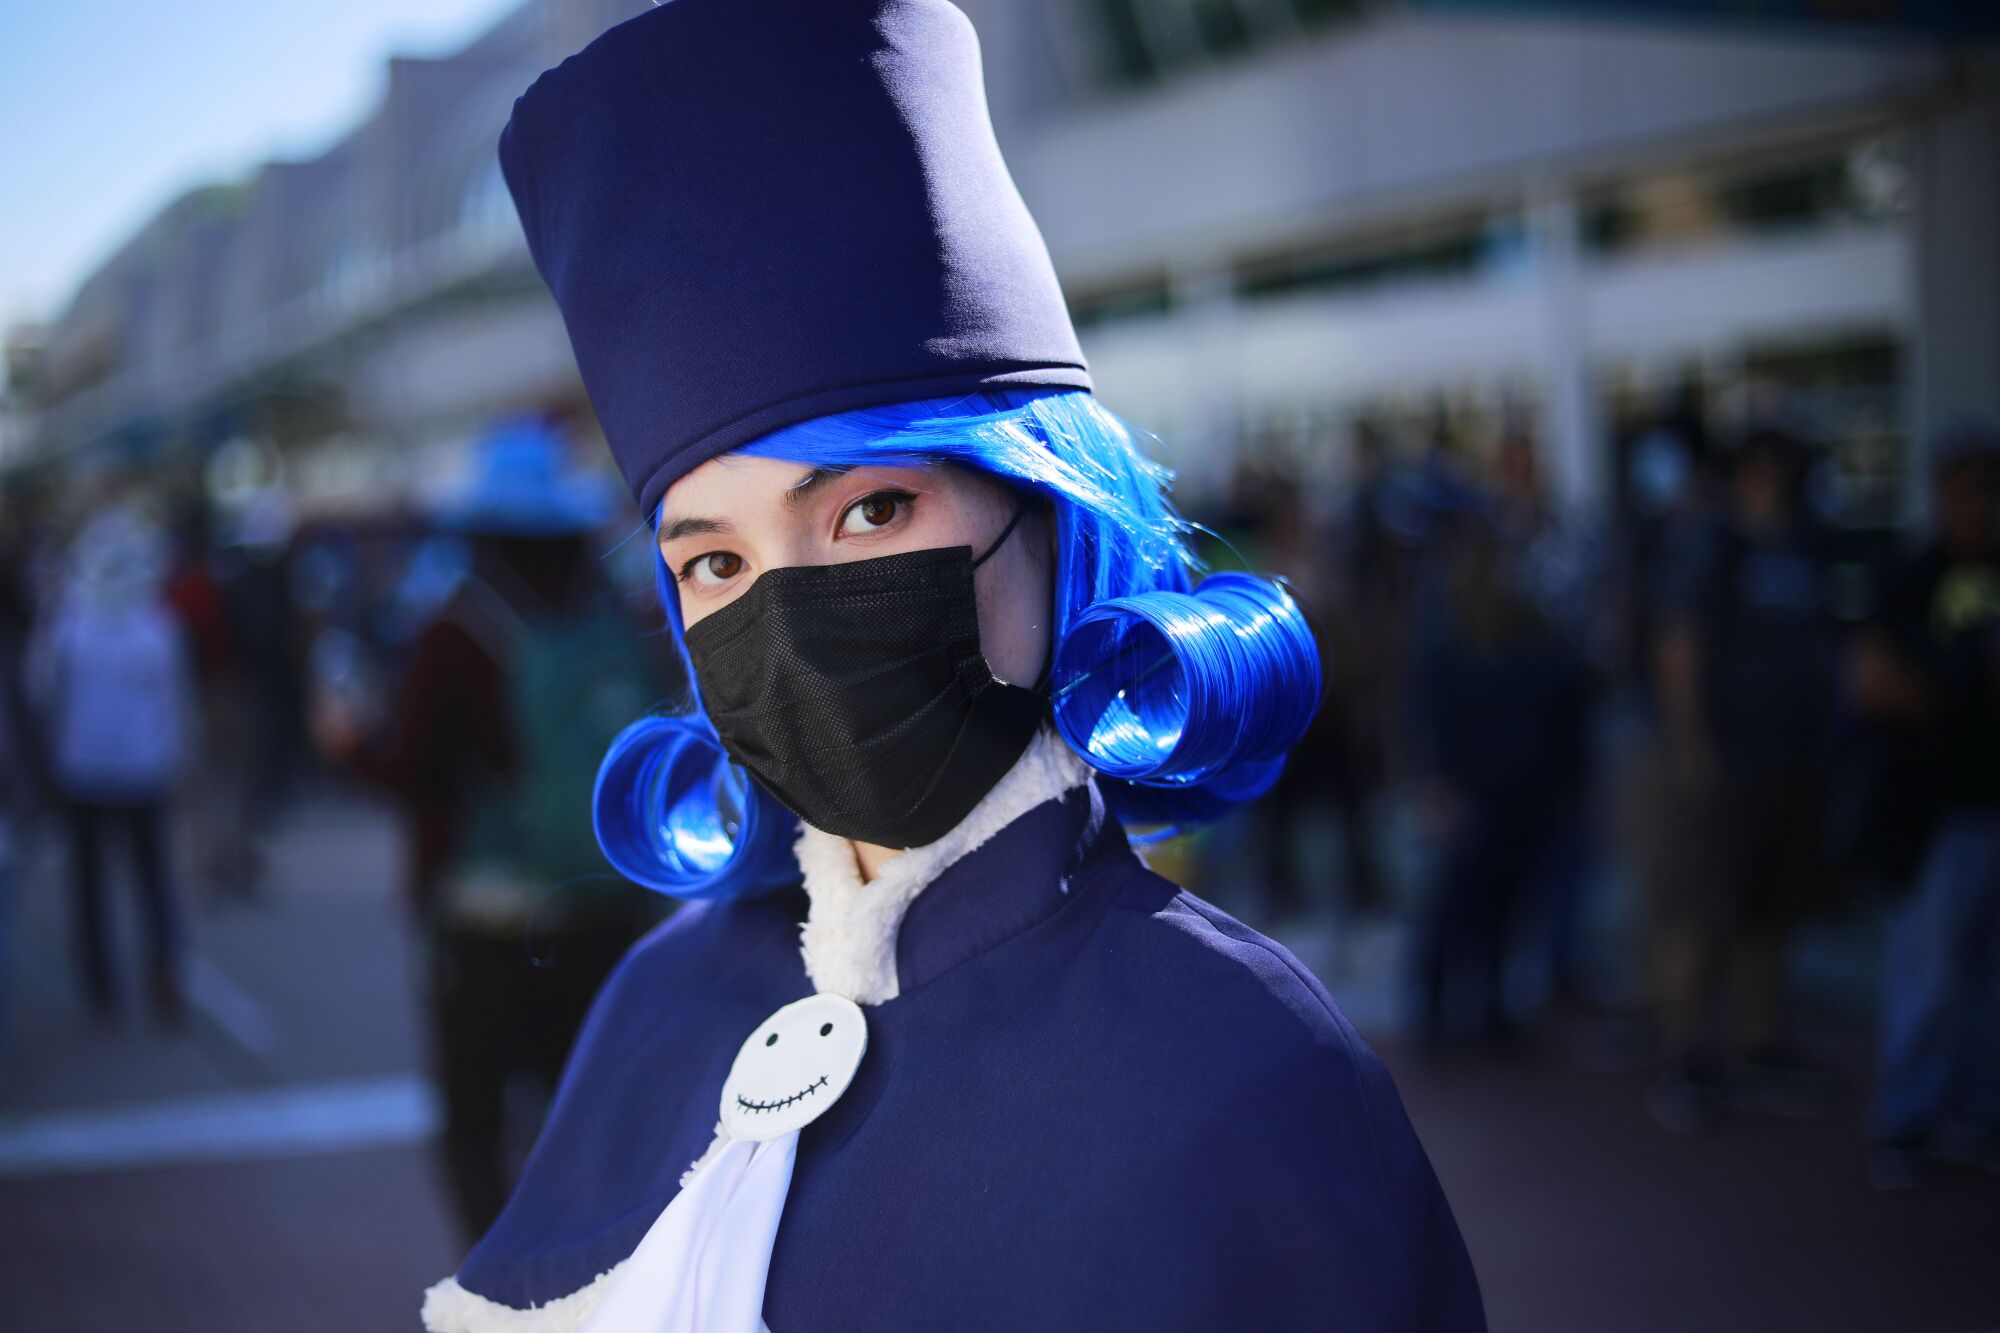 Cloie Negos of San Diego dressed as Juvia Lockser from the anime/manga series Fairy Tail